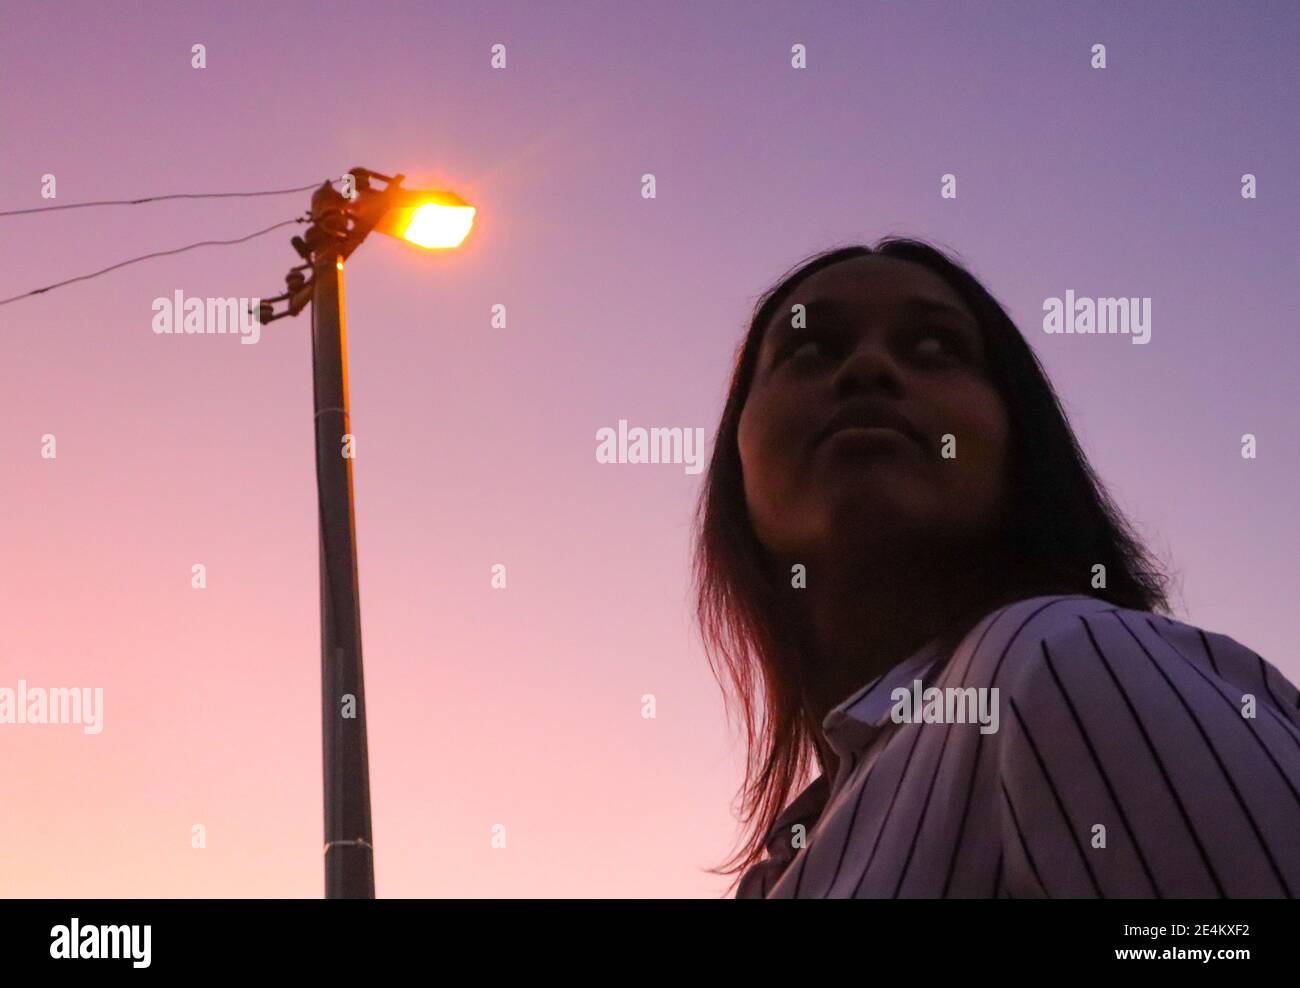 Kapstadt, Südafrika - 20-02-2020 Kreative und dunstig lila Sonnenuntergang und Straßenlaterne. Stilvolle junge Frau Silhouetten im Vordergrund. Stockfoto